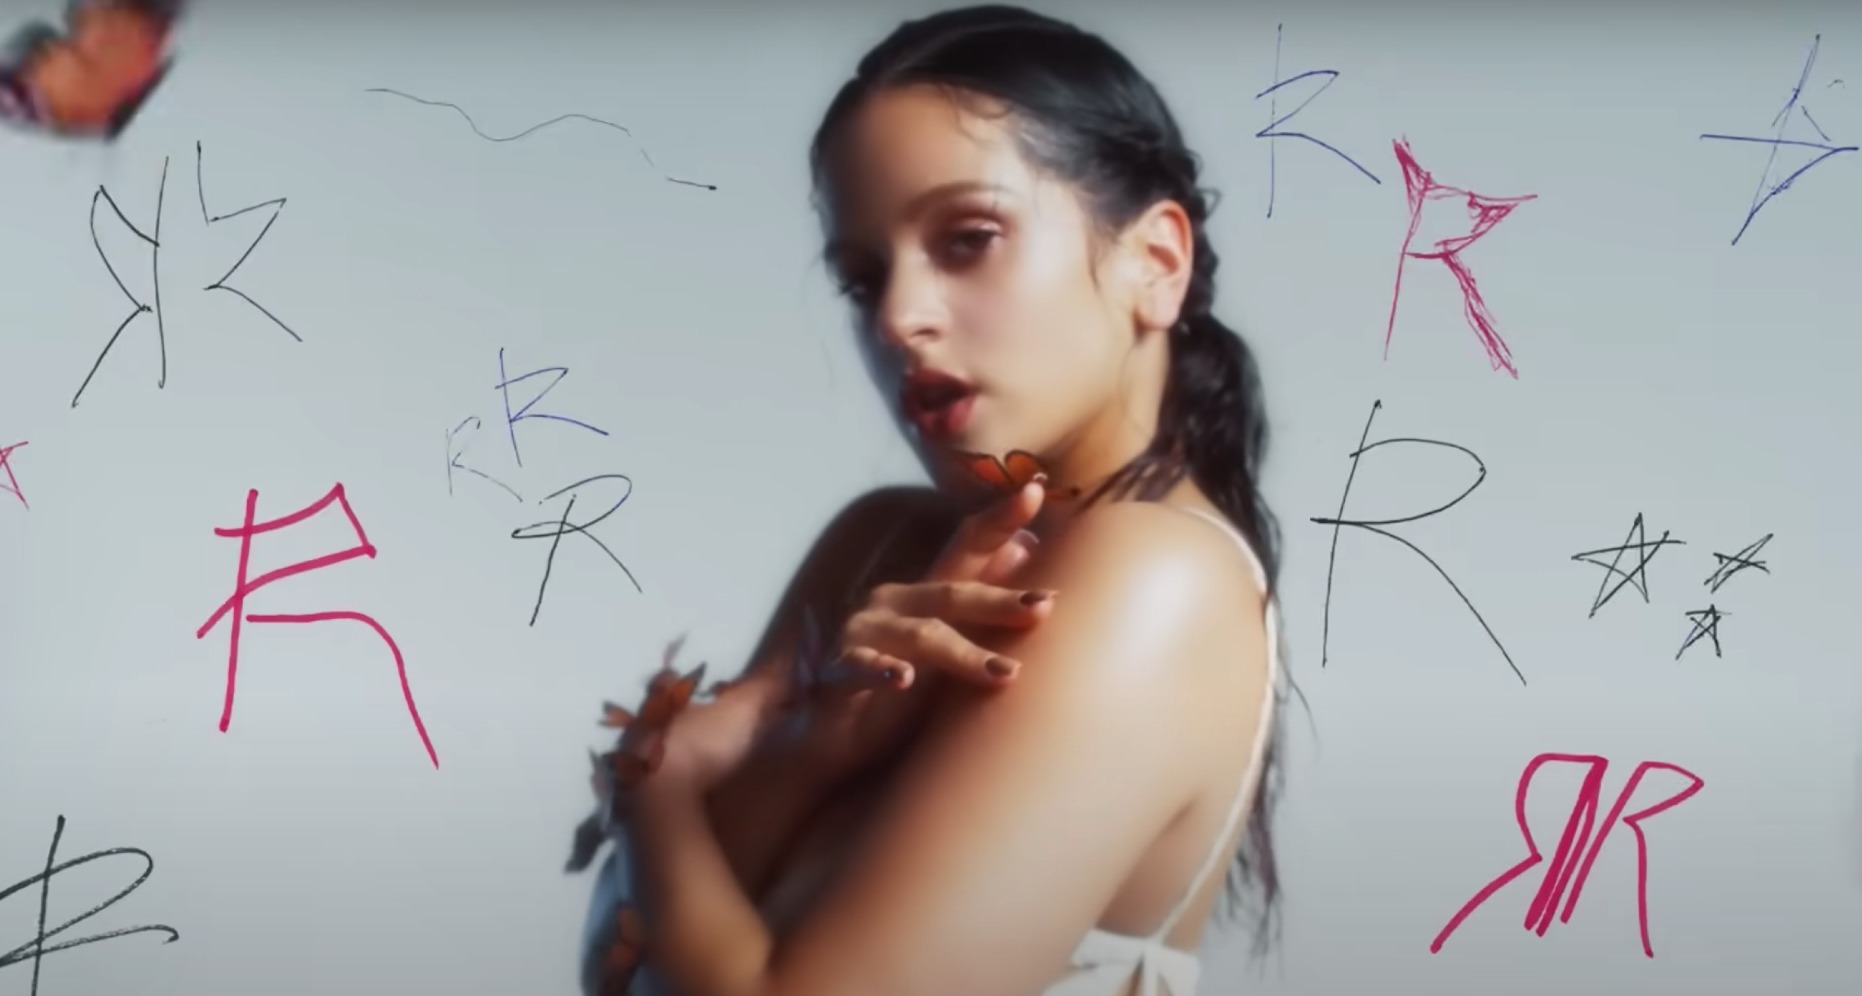 Cupra reinterpreta el “Abcdefg” de Rosalía y lo convierte en un impactante manifiesto de marca